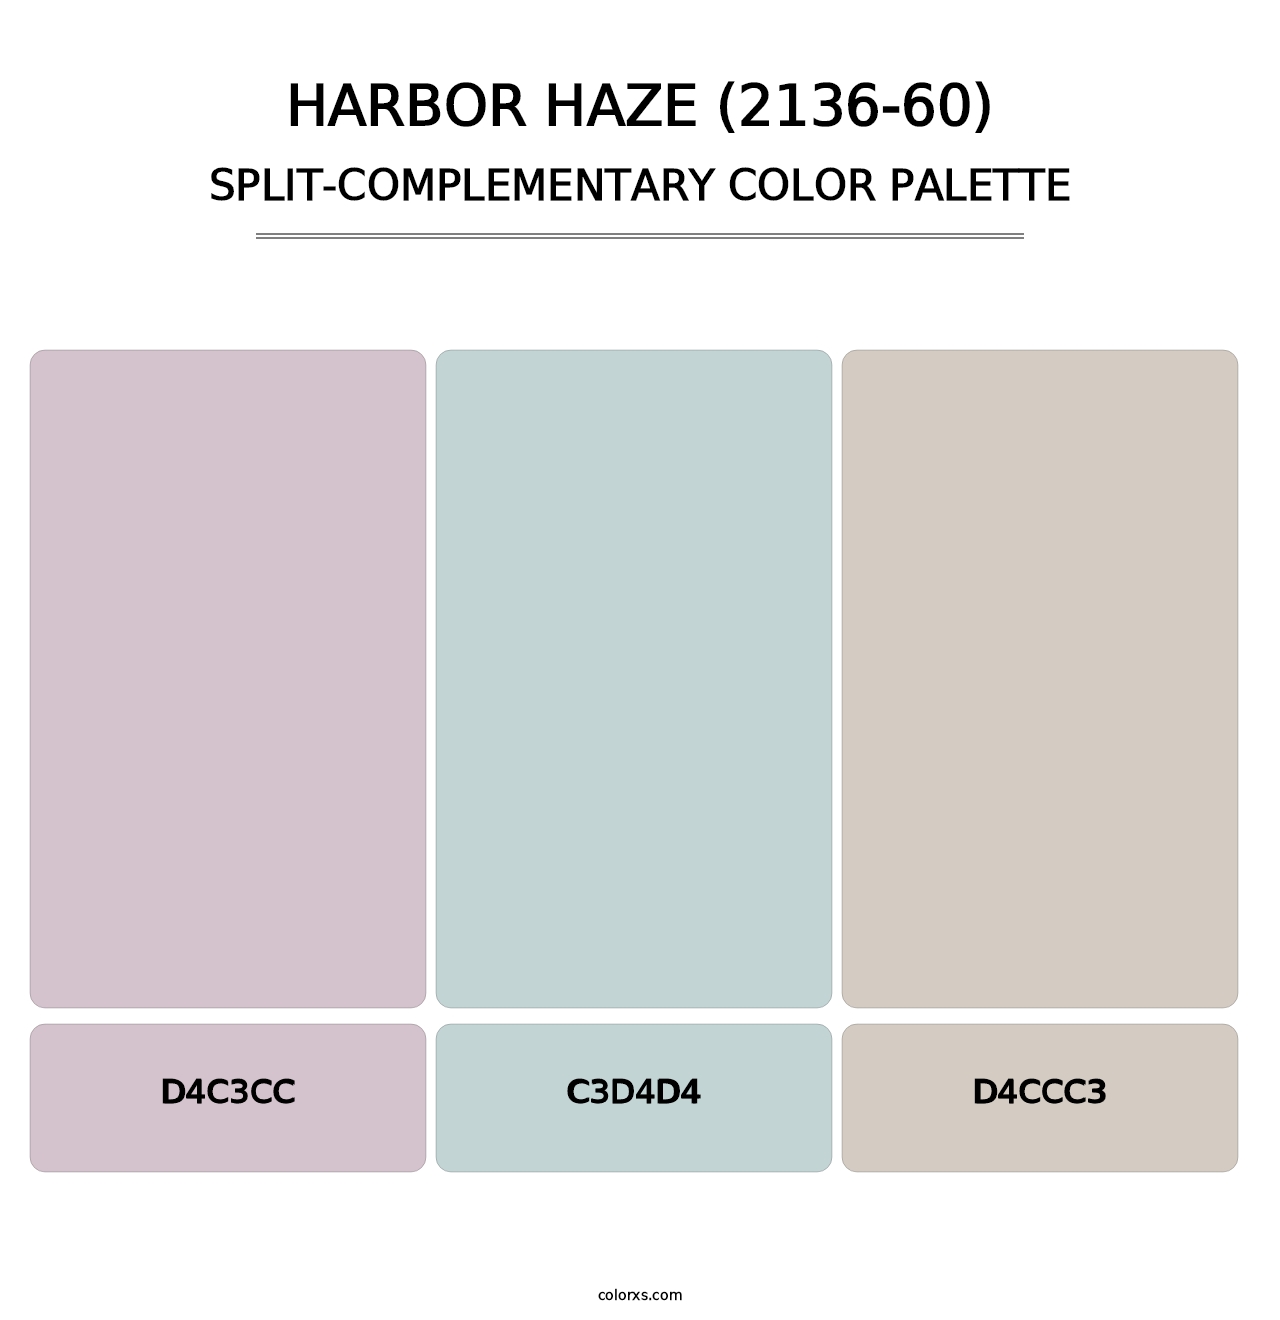 Harbor Haze (2136-60) - Split-Complementary Color Palette